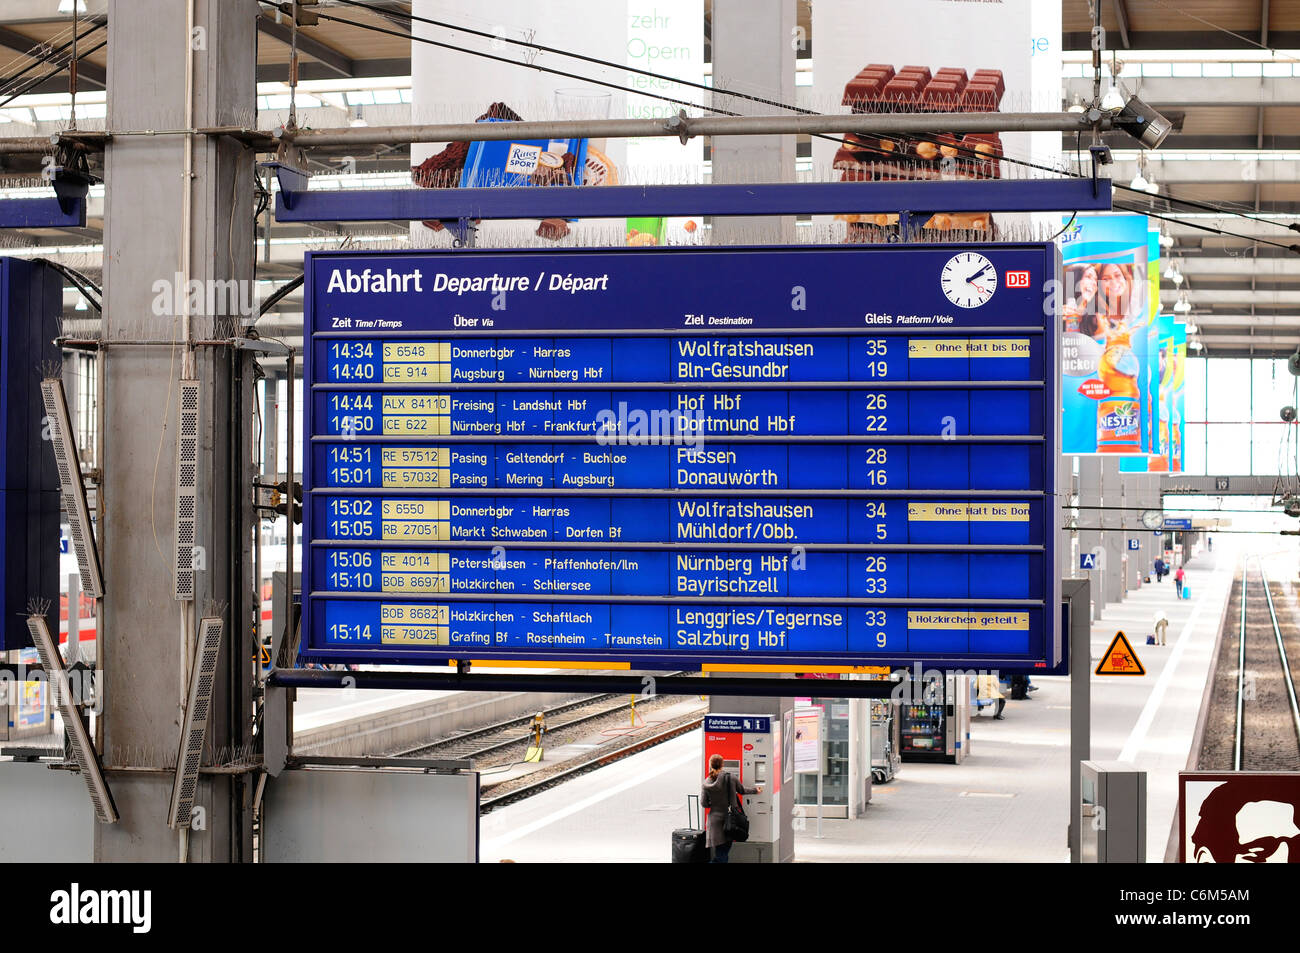 Les départs à la gare Hauptbahnhof München, Munich, Allemagne Banque D'Images